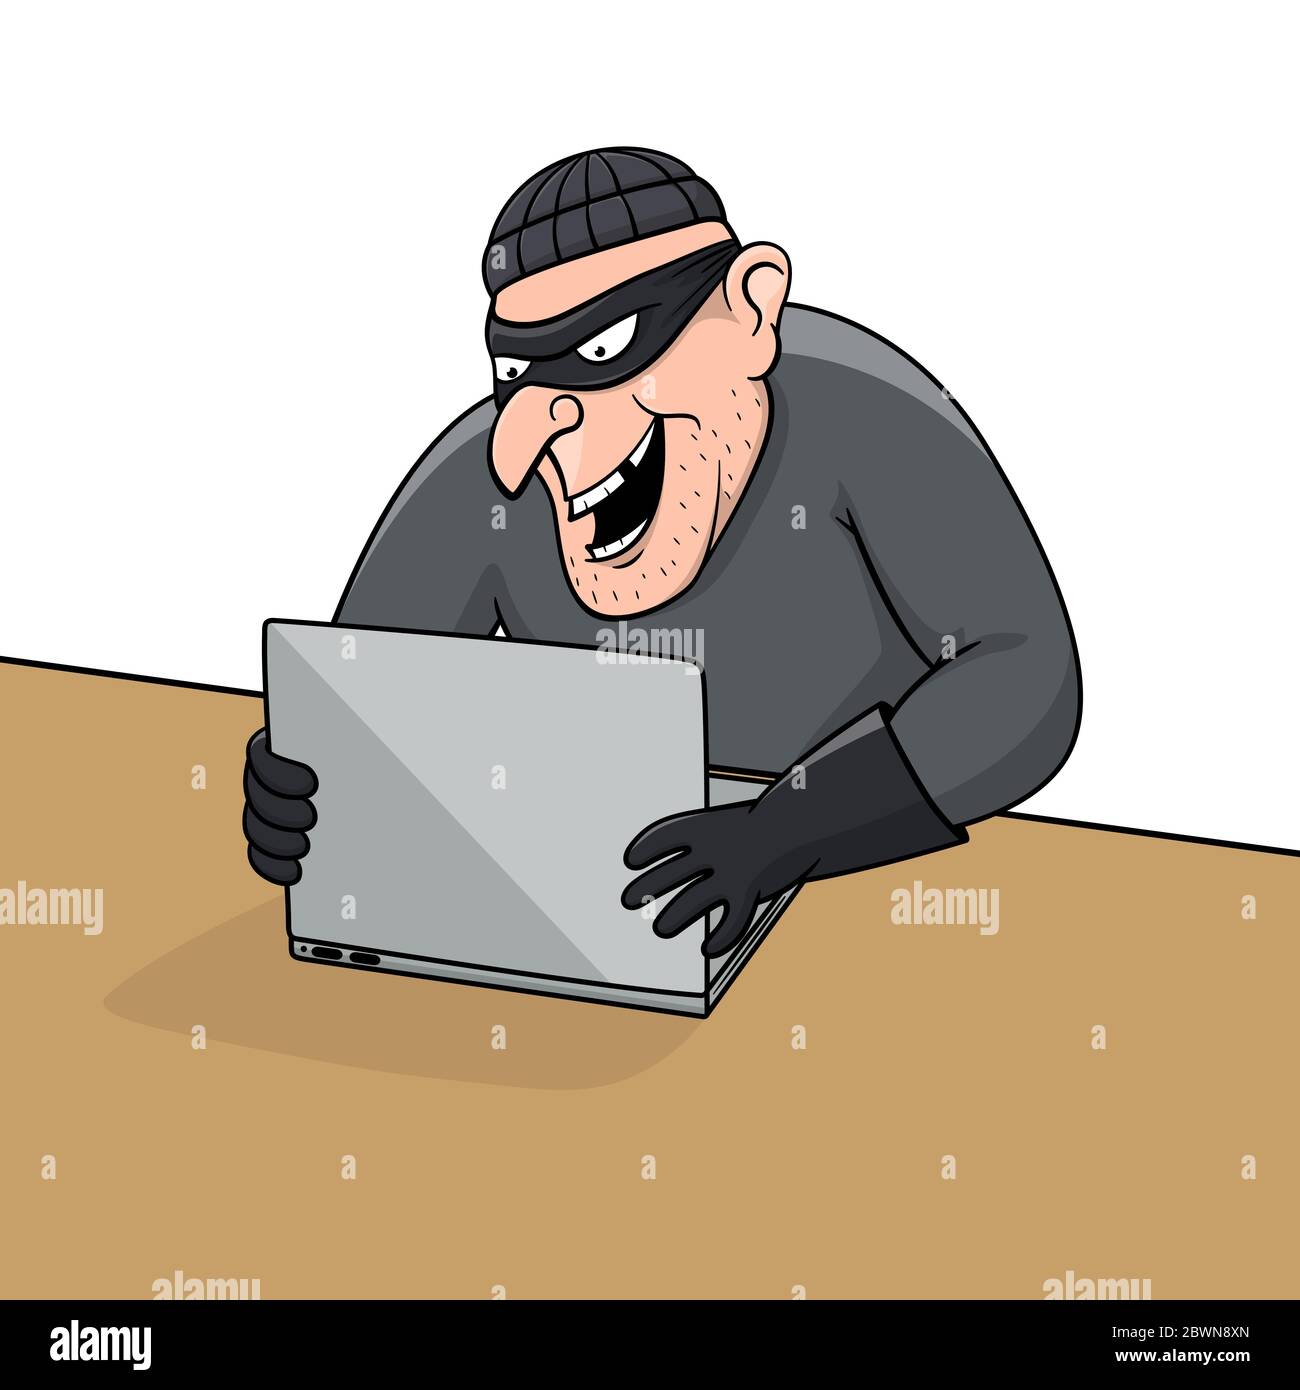 Concept de piratage. Un voleur de caricature tente de pirater des informations personnelles. Illustration de Vecteur